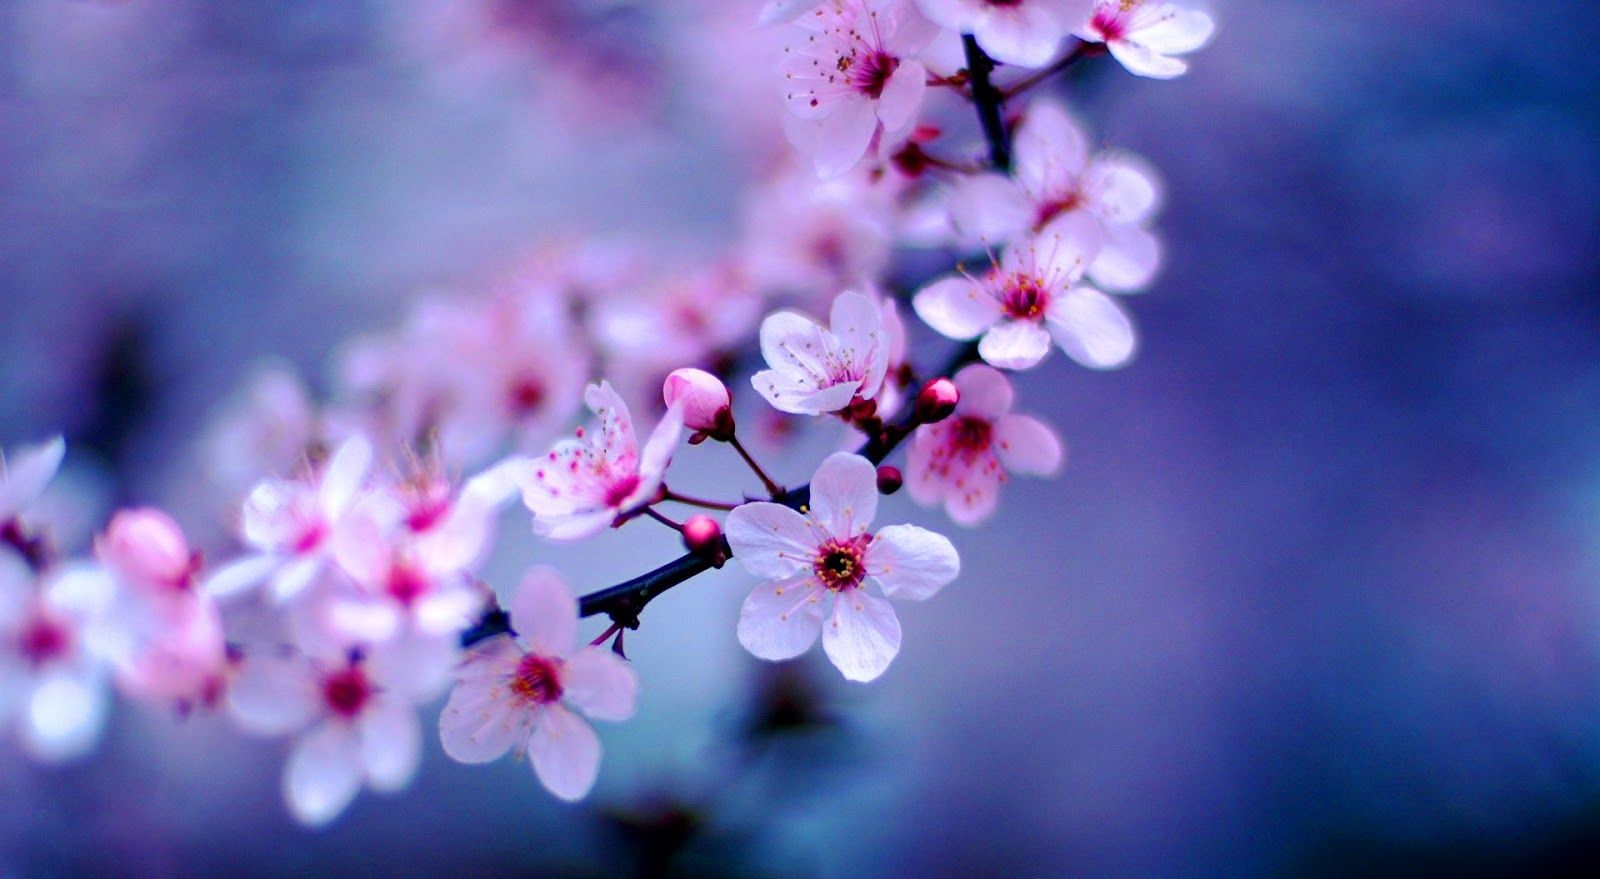 دانلود عکس بسیار زیبا از شکوفه های هلو با کیفیت عالی 